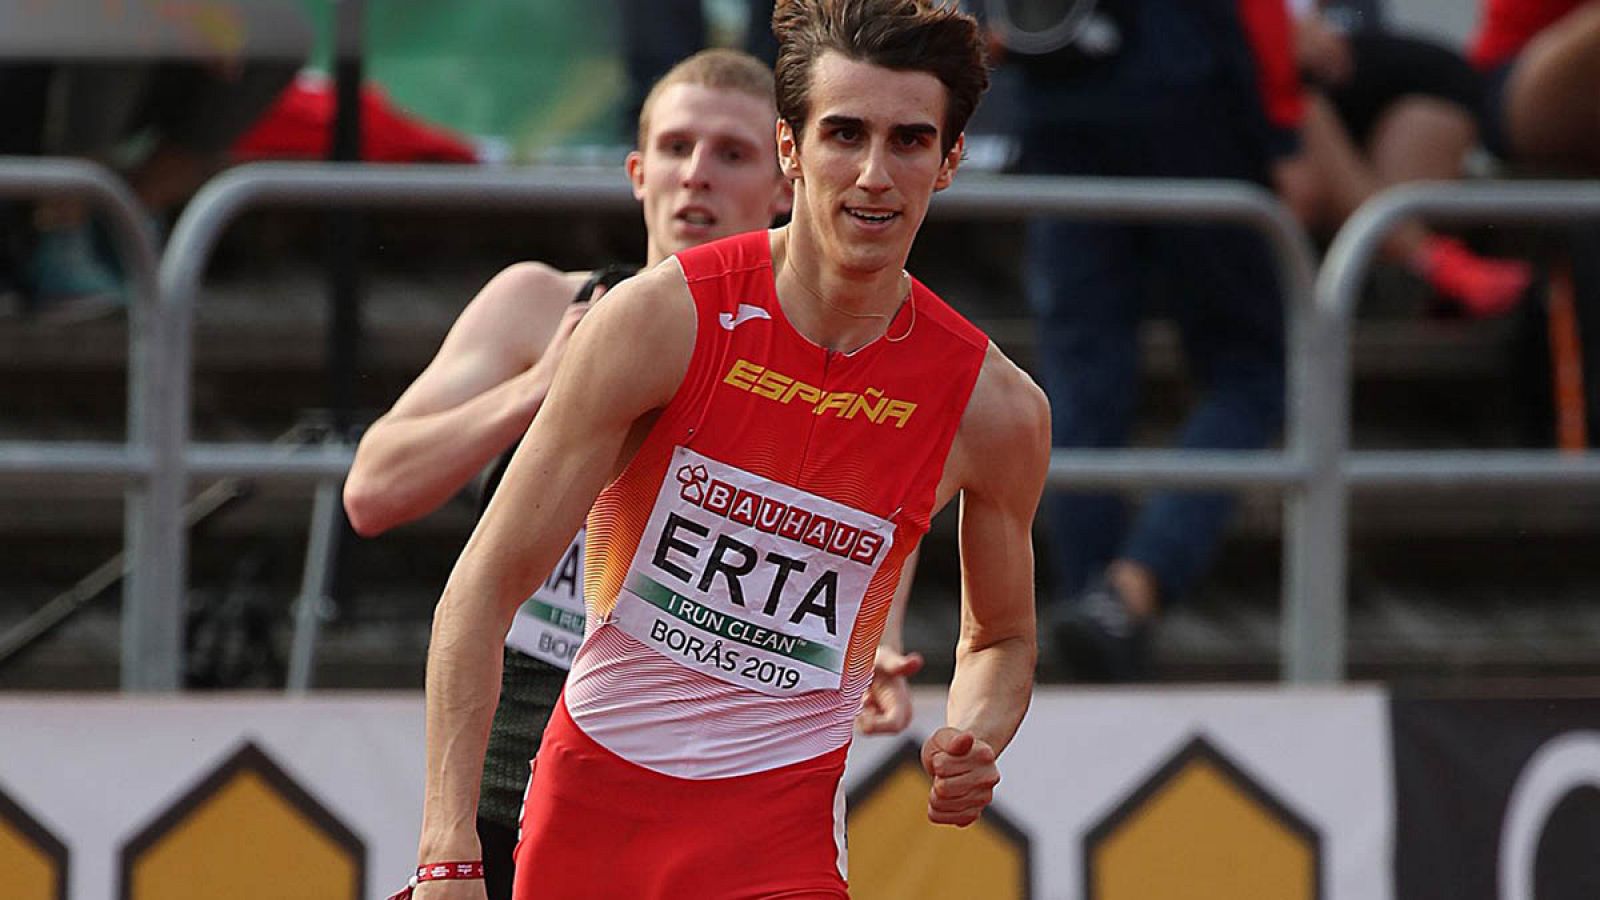 Bernat Erta, disputando la prueba en la que ha sido subcampeón